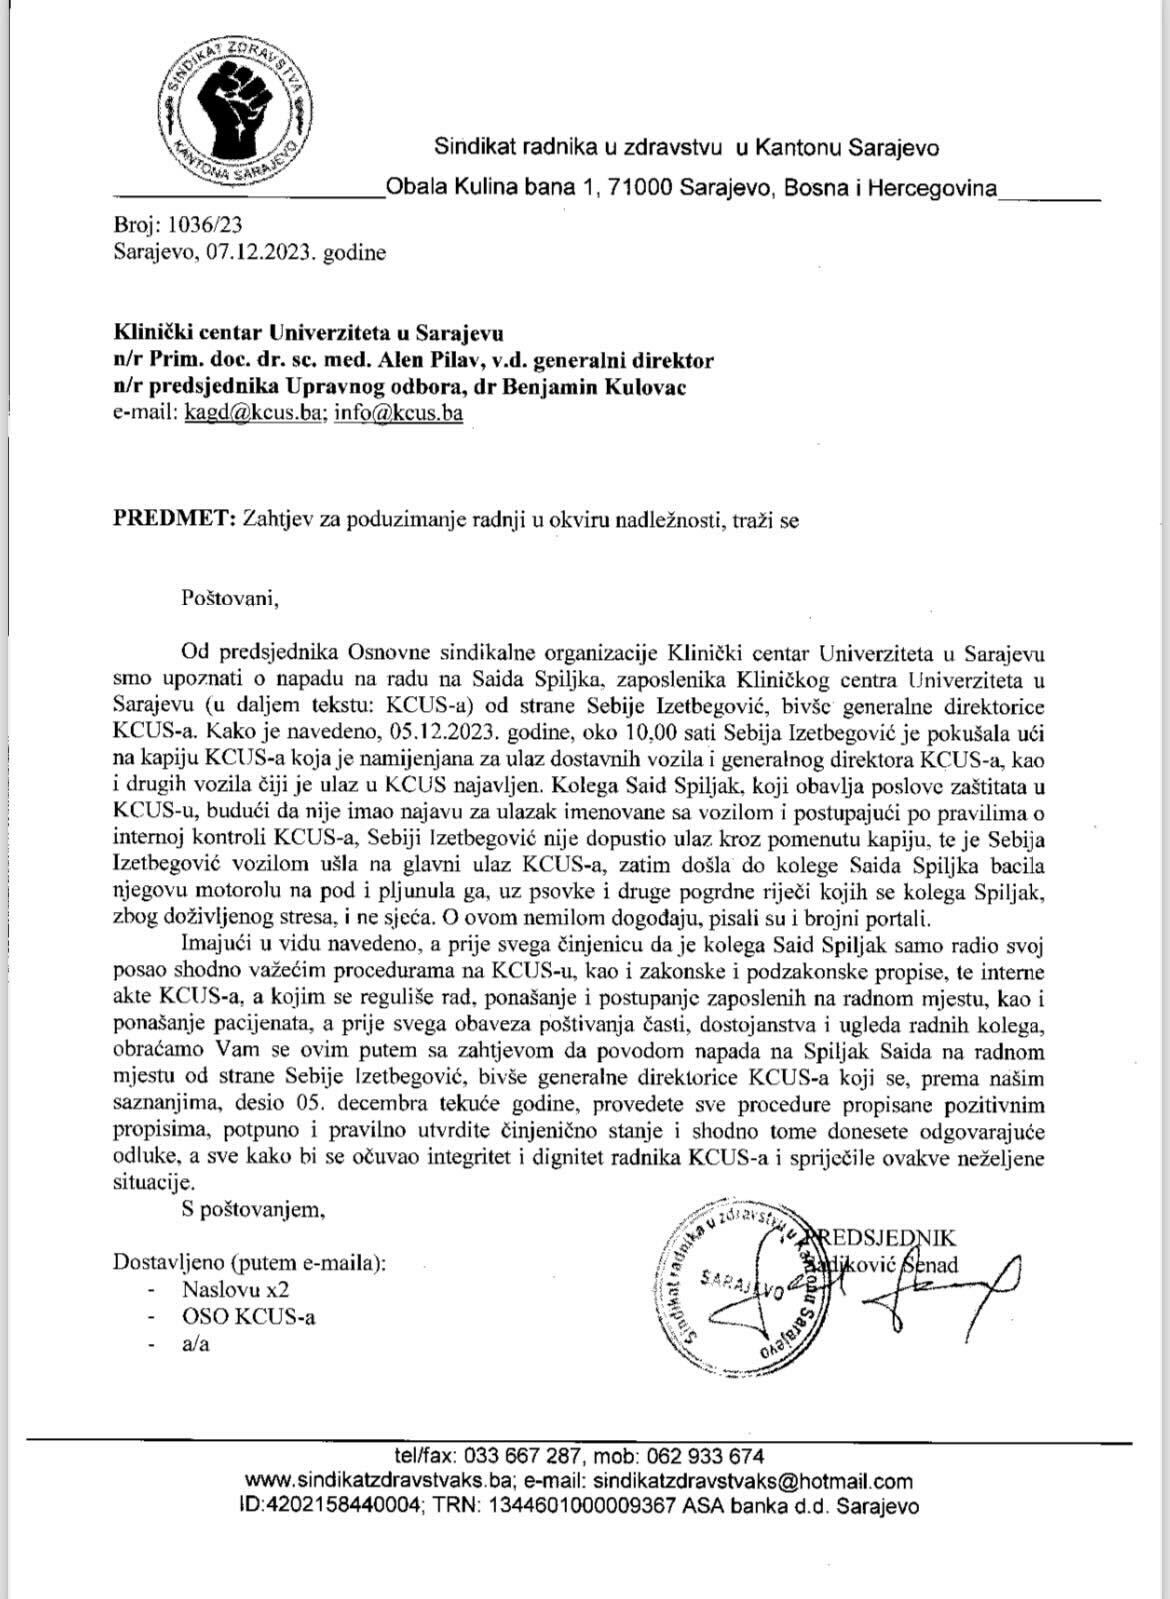 Zahtjev Sindikata radnika u zdravstvu za istragu incidenta Sebije Izetbegović